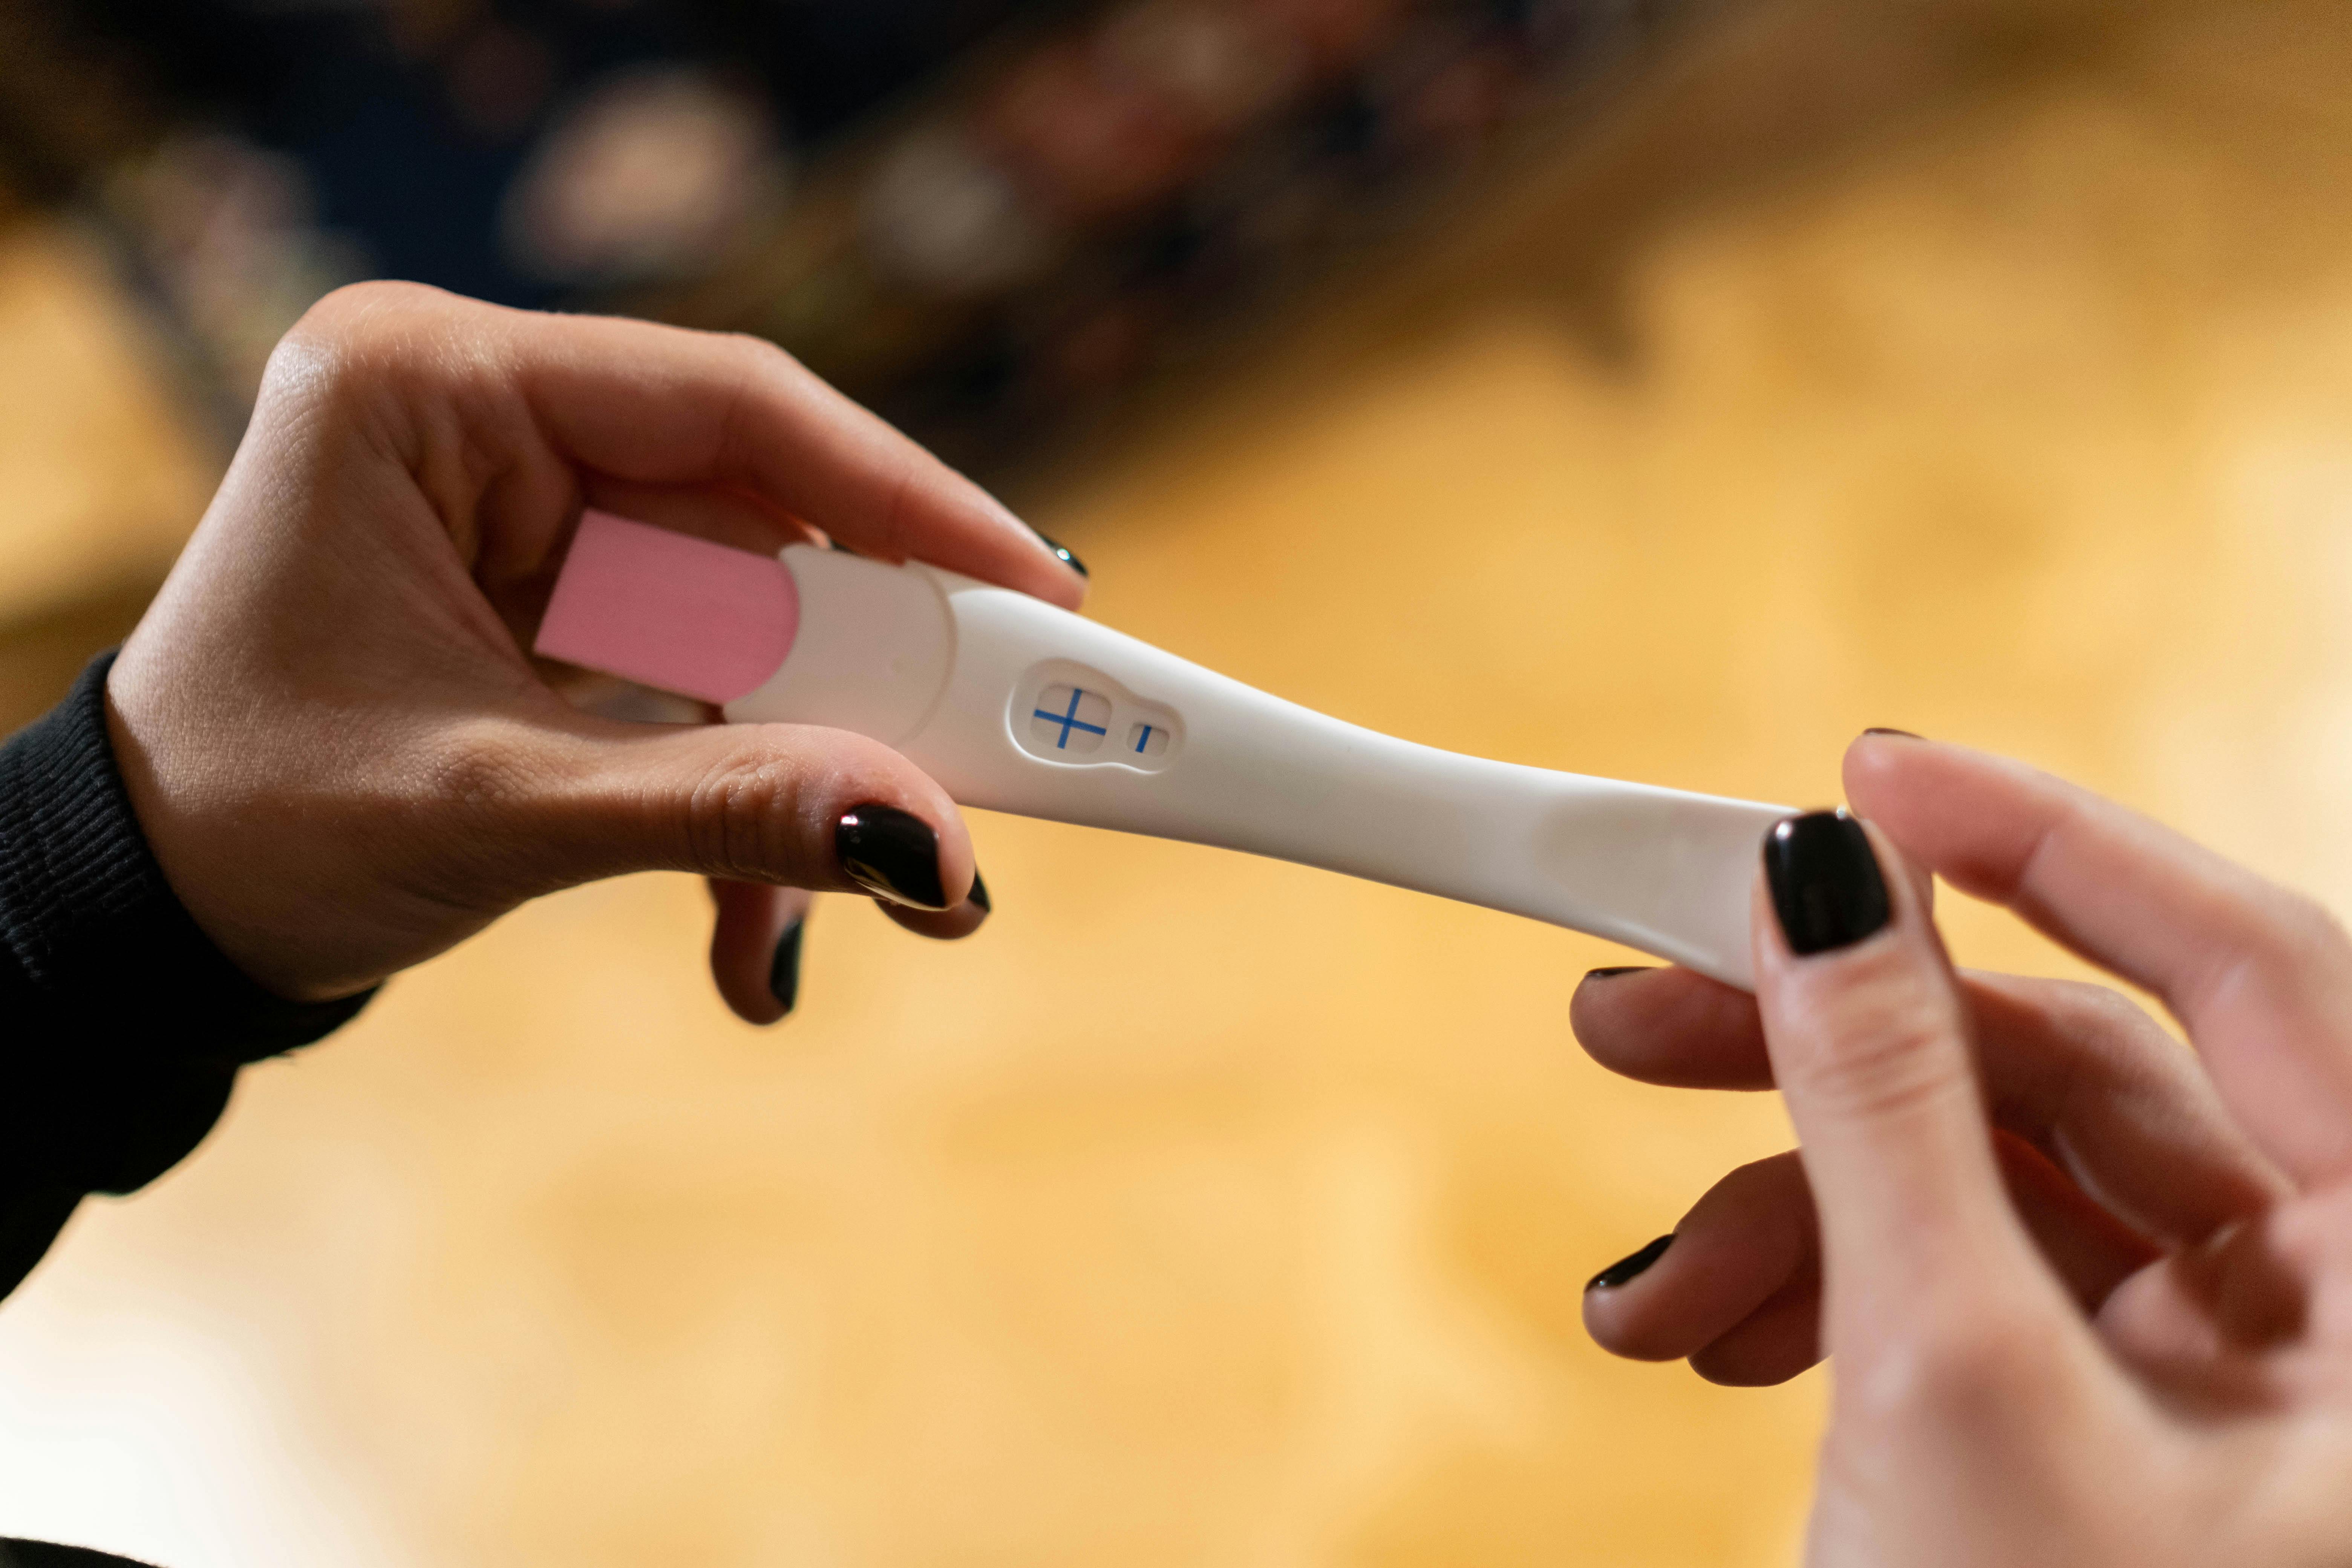 Hands holding pregnancy test kit | Source: Pexels